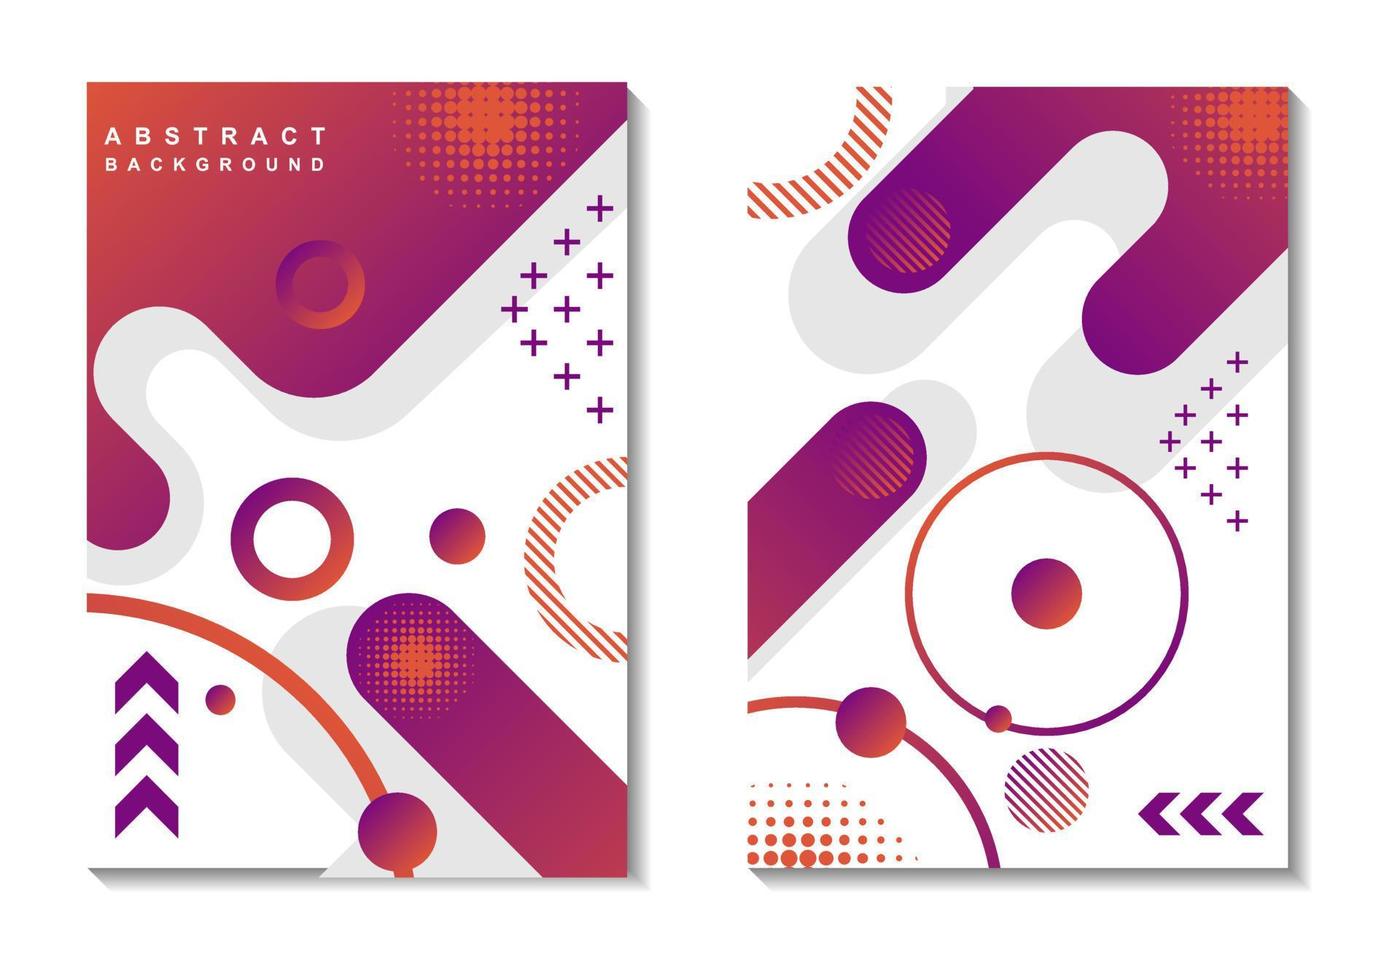 abstracte boekomslag met geometrische vormen in paarse en oranje kleuren vector